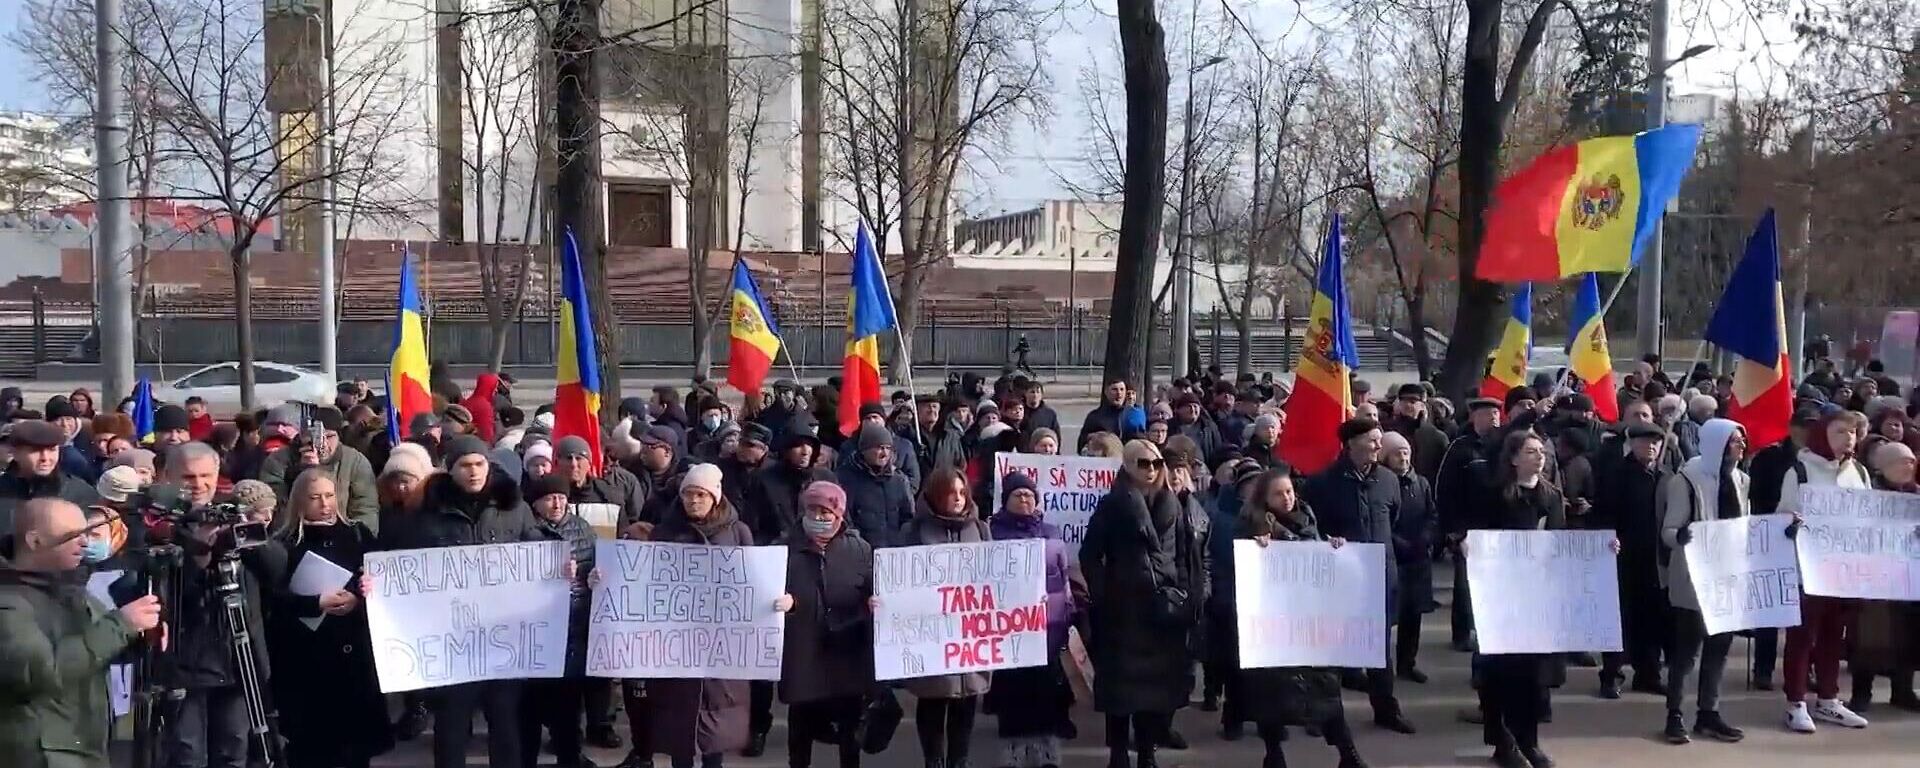 Chúng tôi muốn cuộc sống tốt hơn. Các cuộc biểu tình phản đối chính phủ mới ở Moldova - Sputnik Việt Nam, 1920, 17.02.2023